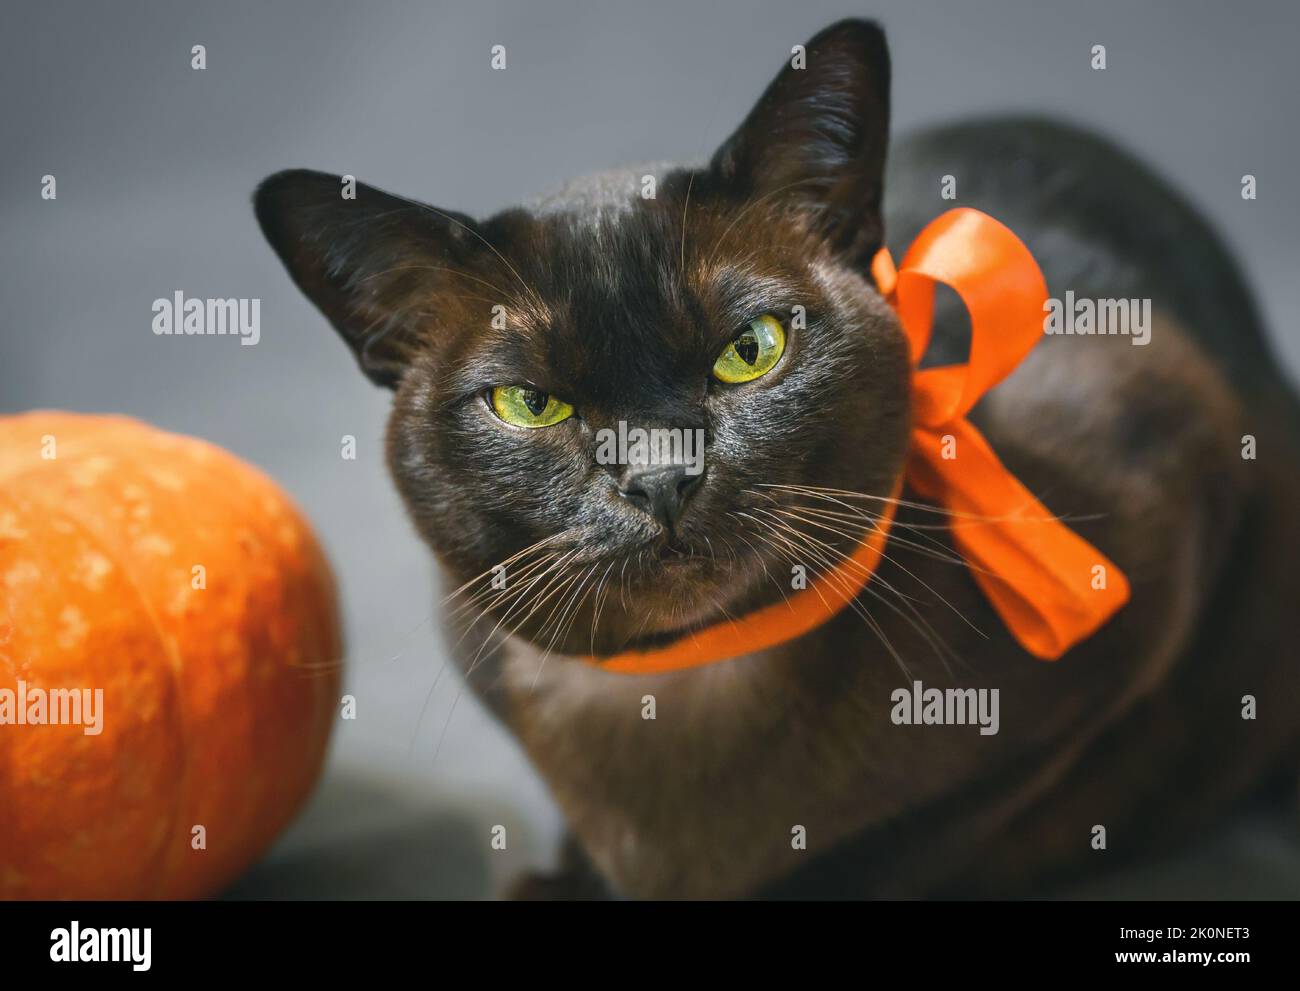 Burma gatto in nastro arancione su Halloween, ritratto di gatto grumpy con occhi gialli verdi da zucca, carino animale domestico birmano guardare la macchina fotografica in Halloween holida Foto Stock